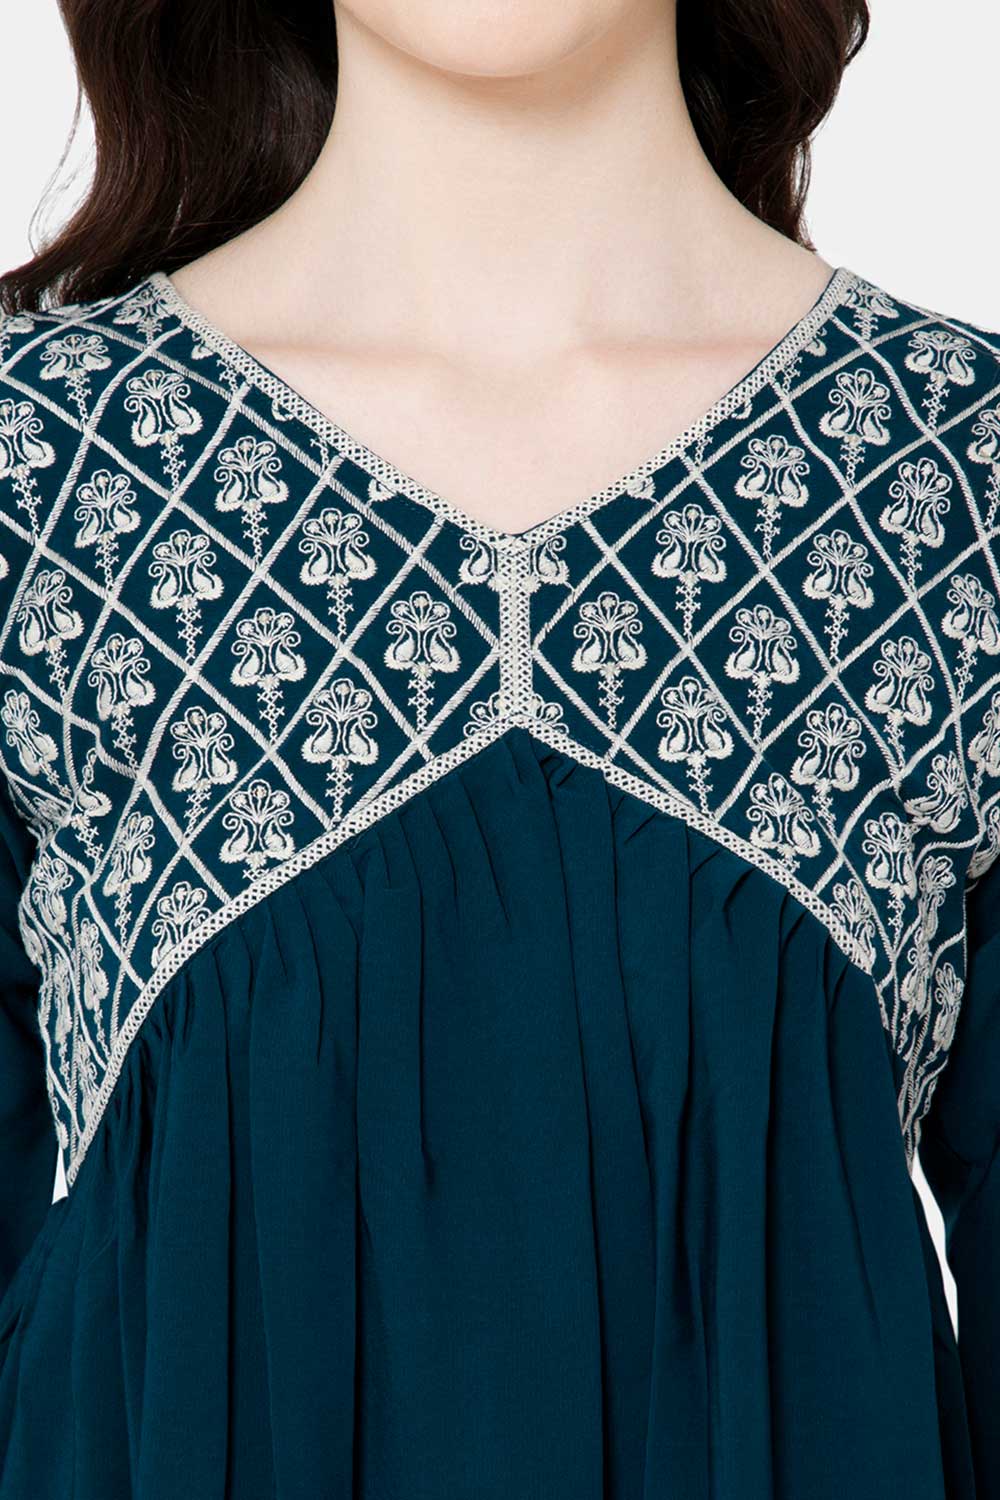 Mythri Women's Ethnic wear Kurthi with Elaborately Embroidered Front Yoke Design - Dark blue - E069